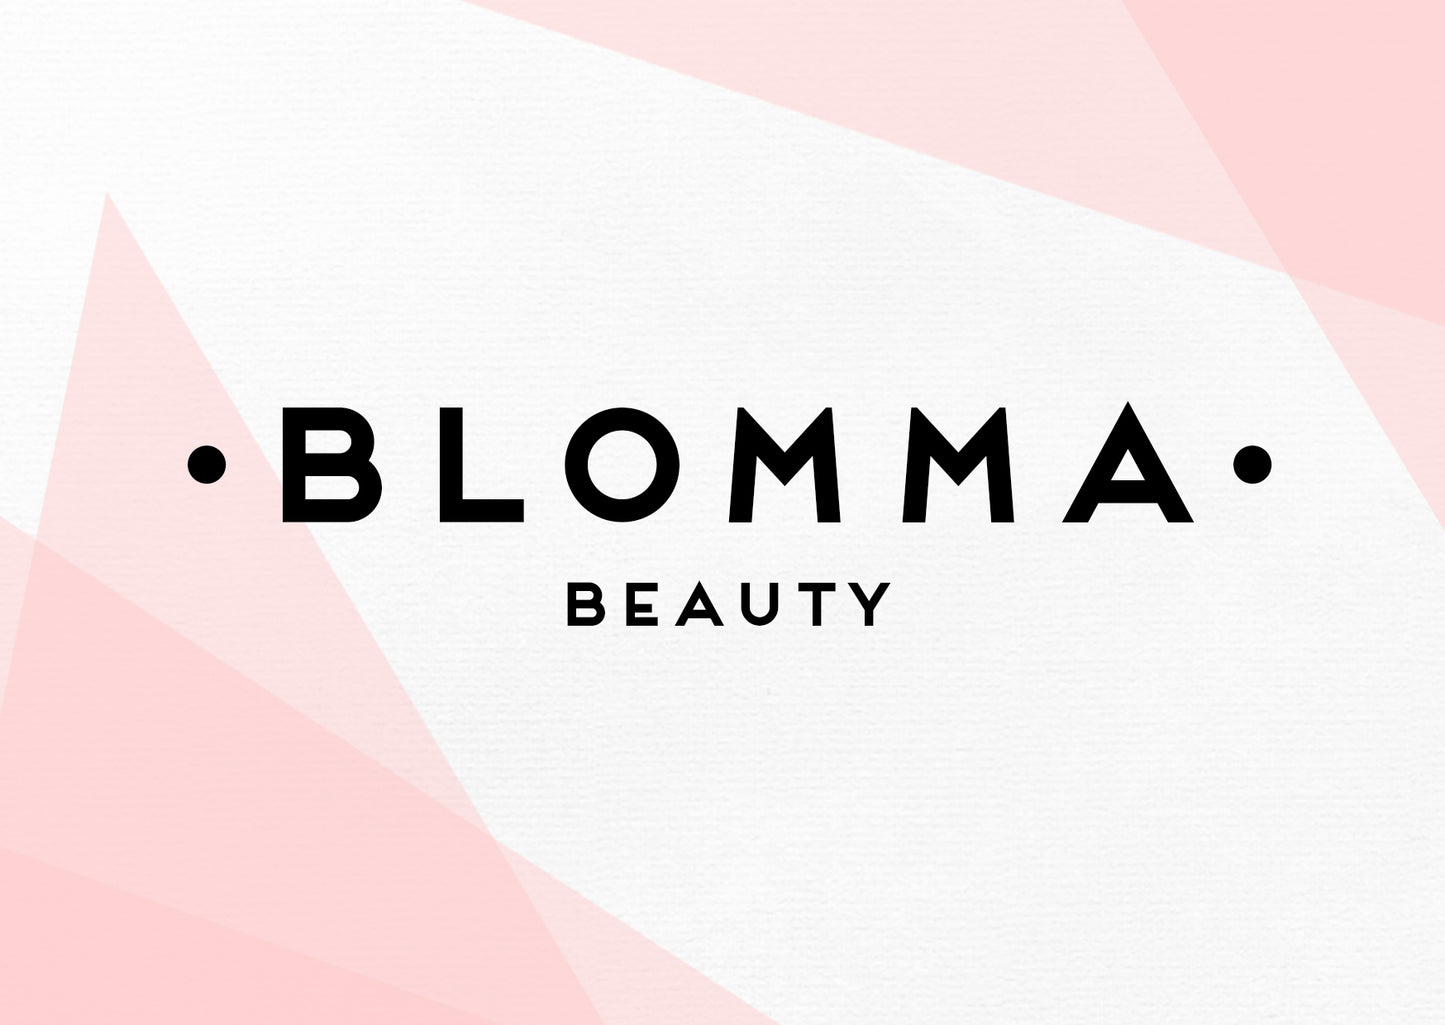 Blomma Beauty Gift Card - Blomma Beauty